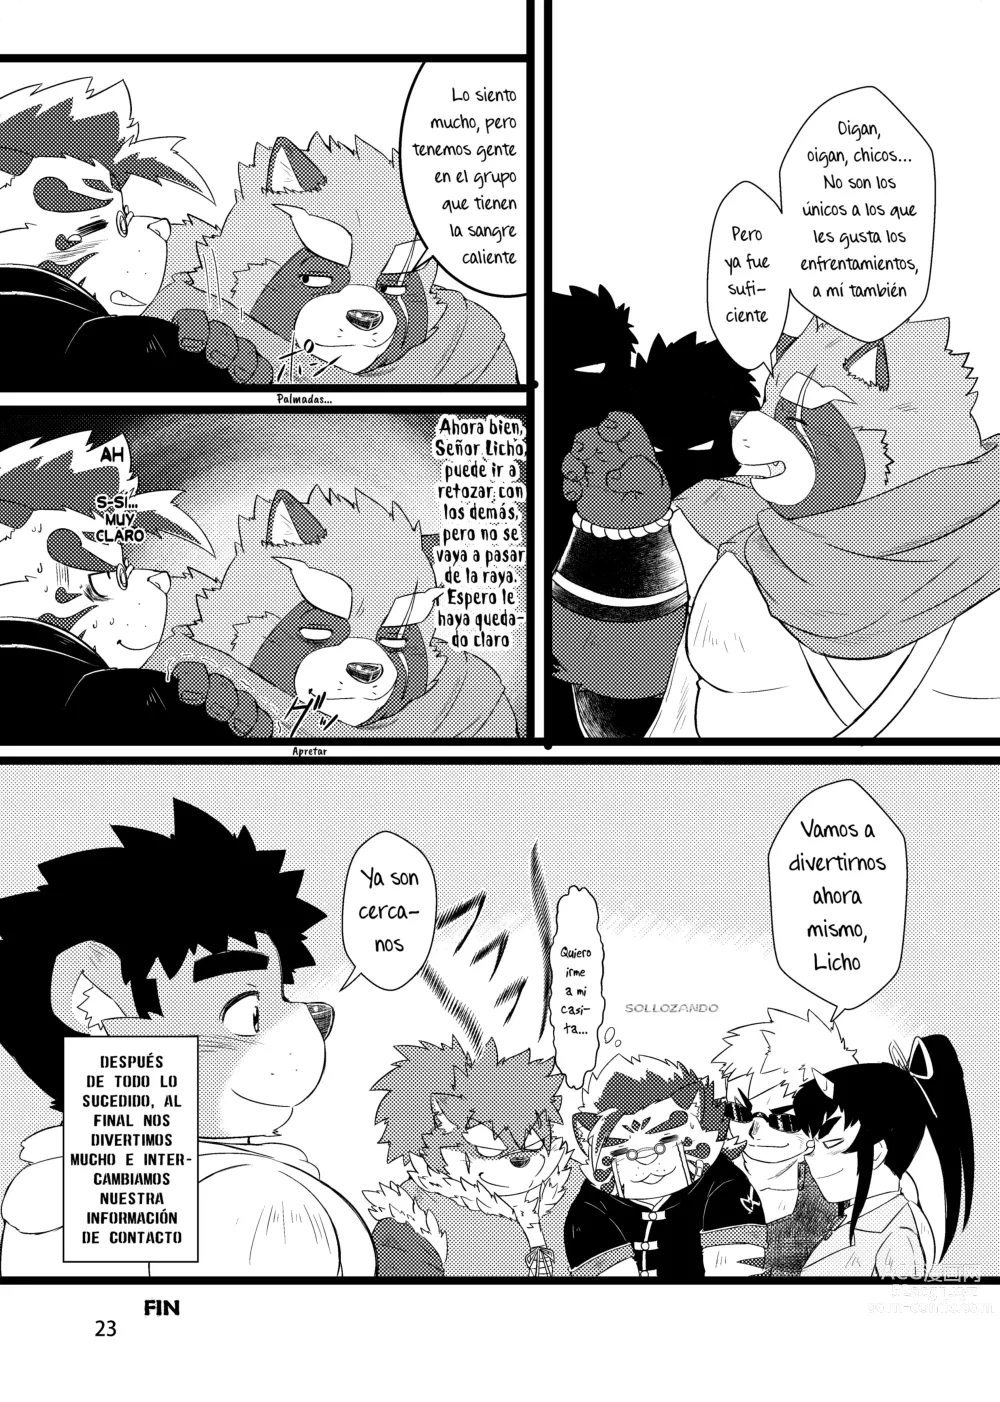 Page 26 of doujinshi ¿No es ese mi amigo Licho?